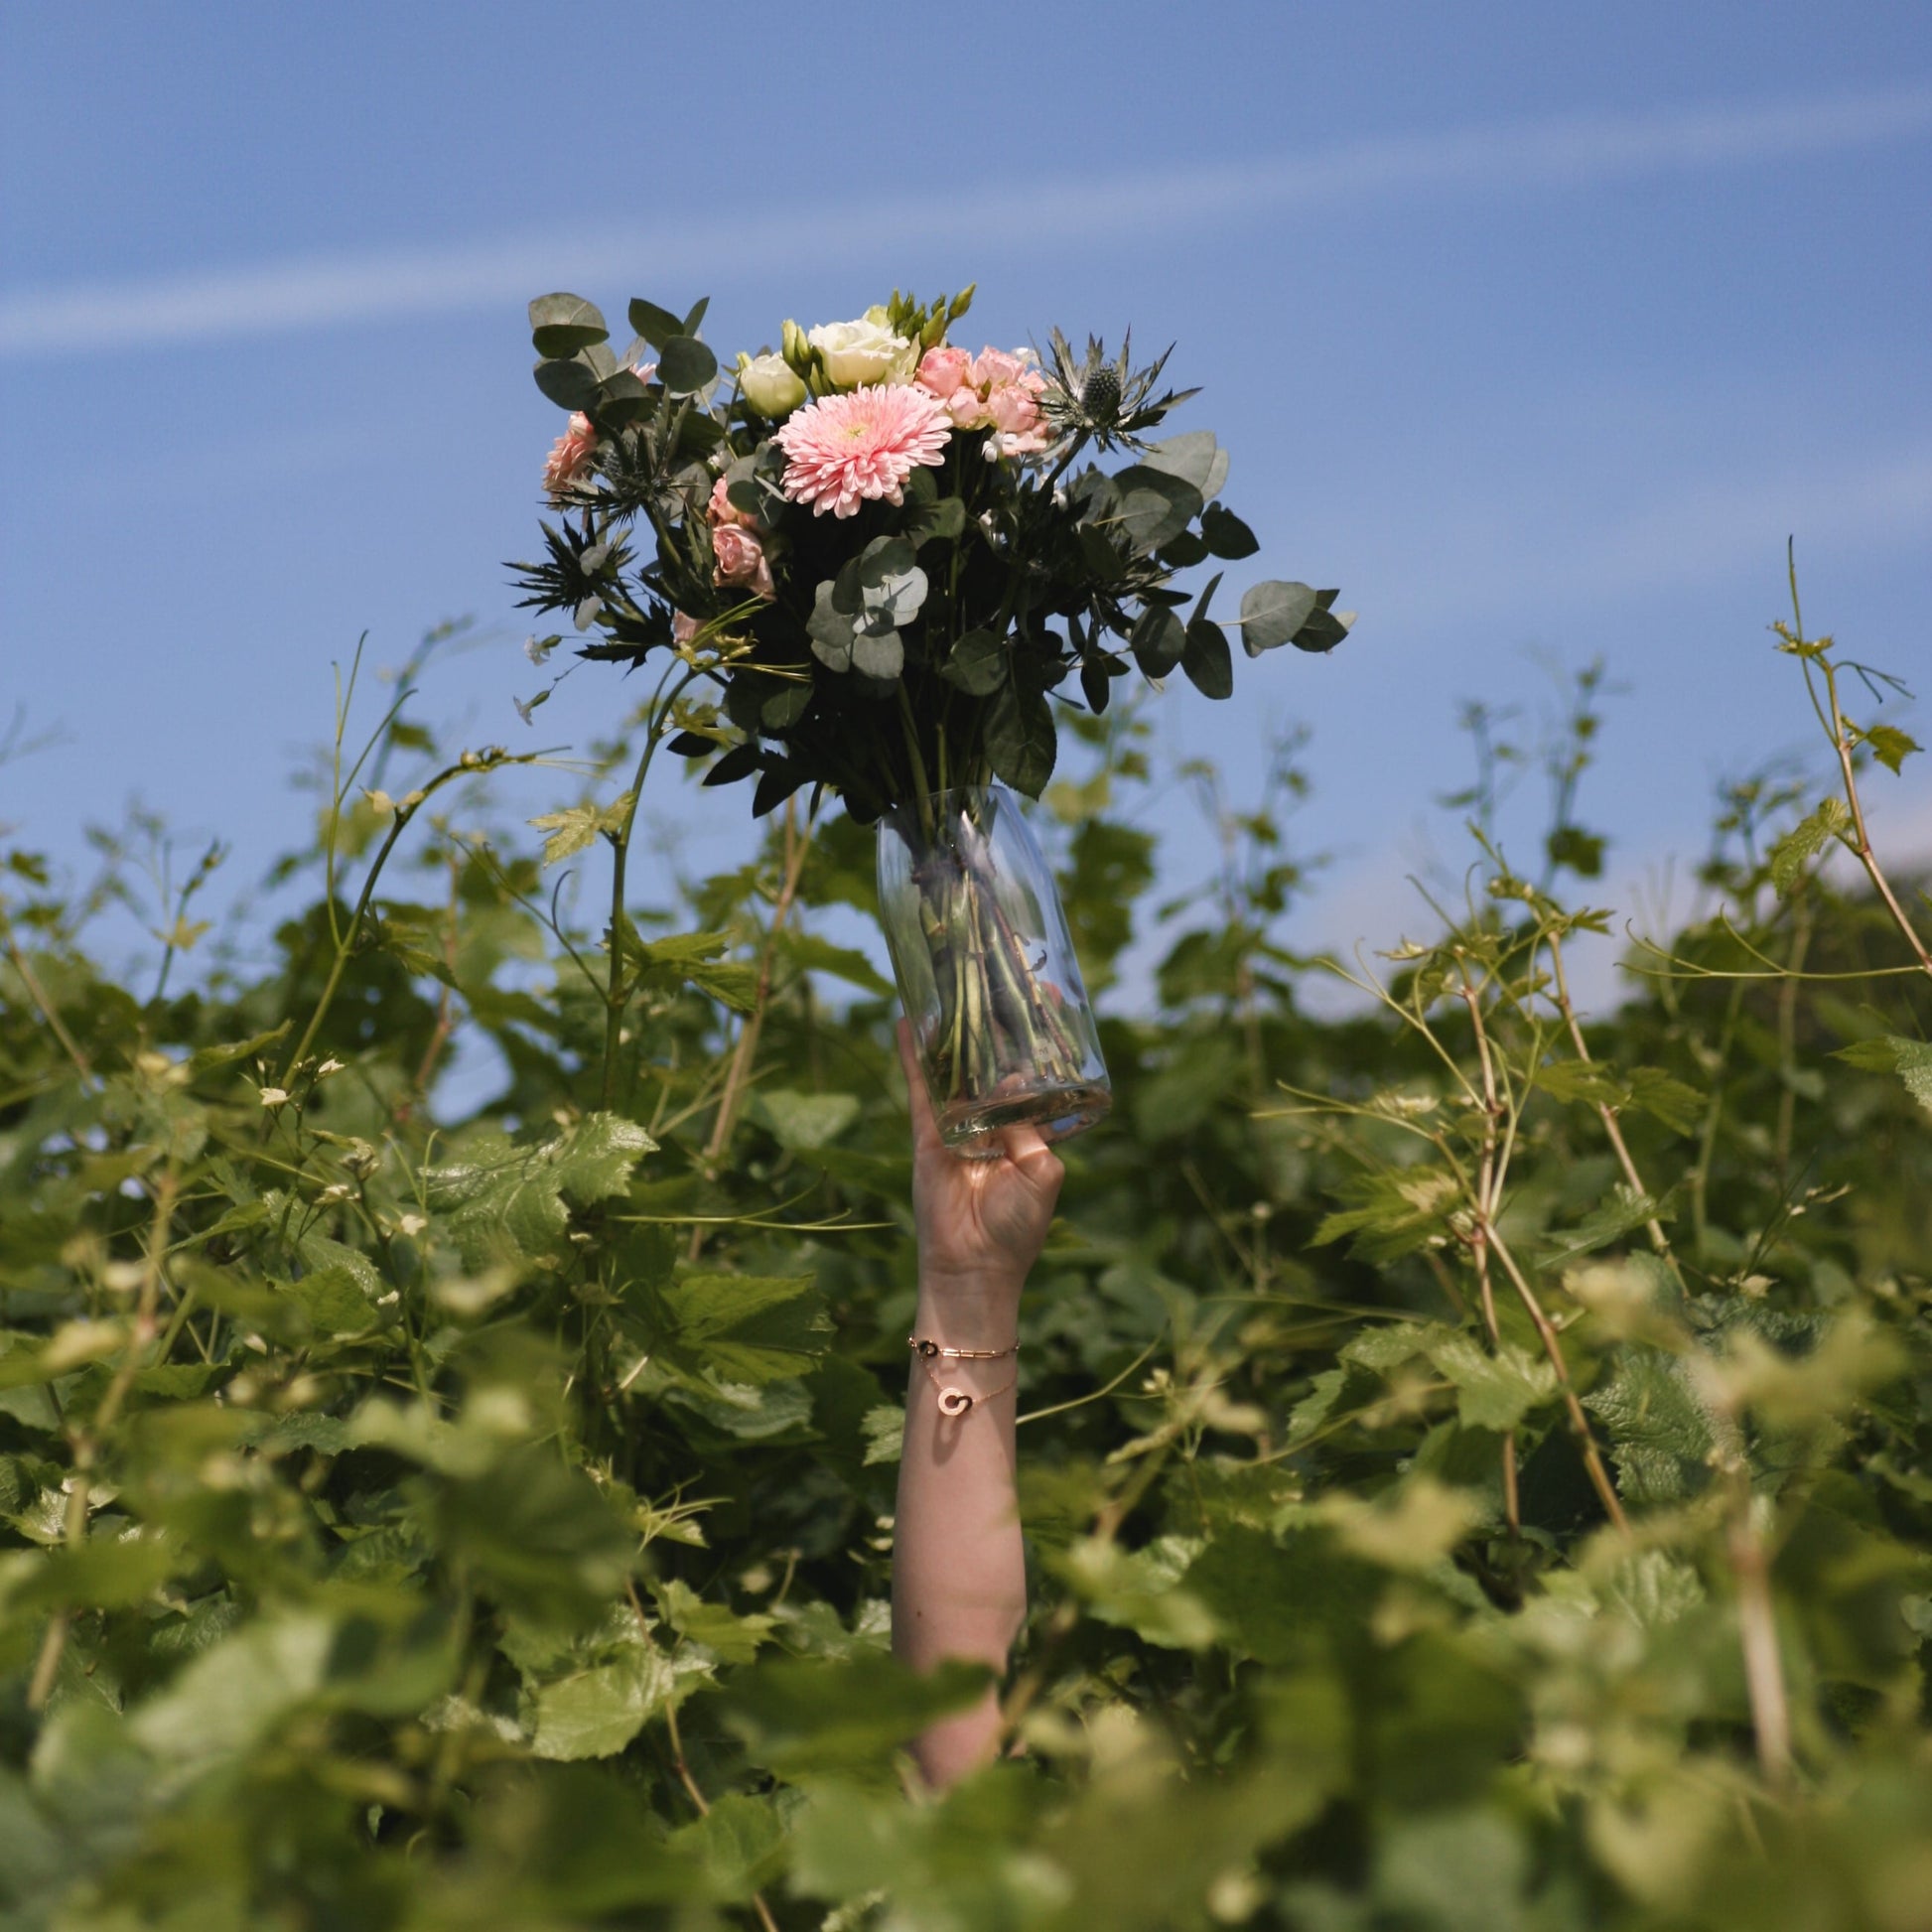 Main d'une femme qui tient un vase bouteille transparent en l'air avec des fleurs dedans au milieu des vignes. 